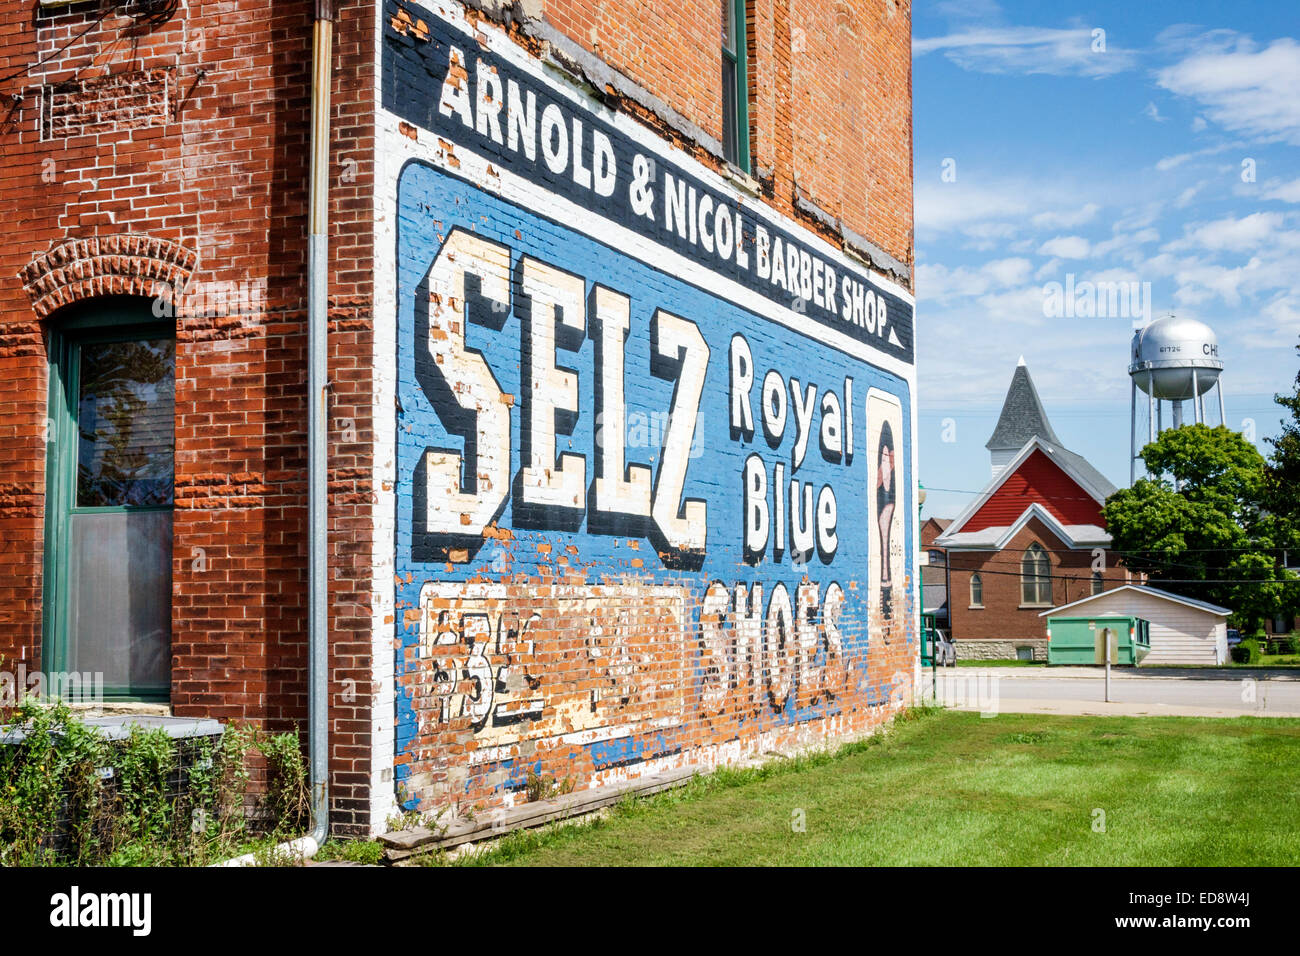 Illinois Chenoa, strada storica Route 66, US 66, autostrada, Selz Royal Blue Shoes Mural, pubblicità all'aperto, edificio, esterno, mattoni rossi, torre d'acqua, IL1 Foto Stock